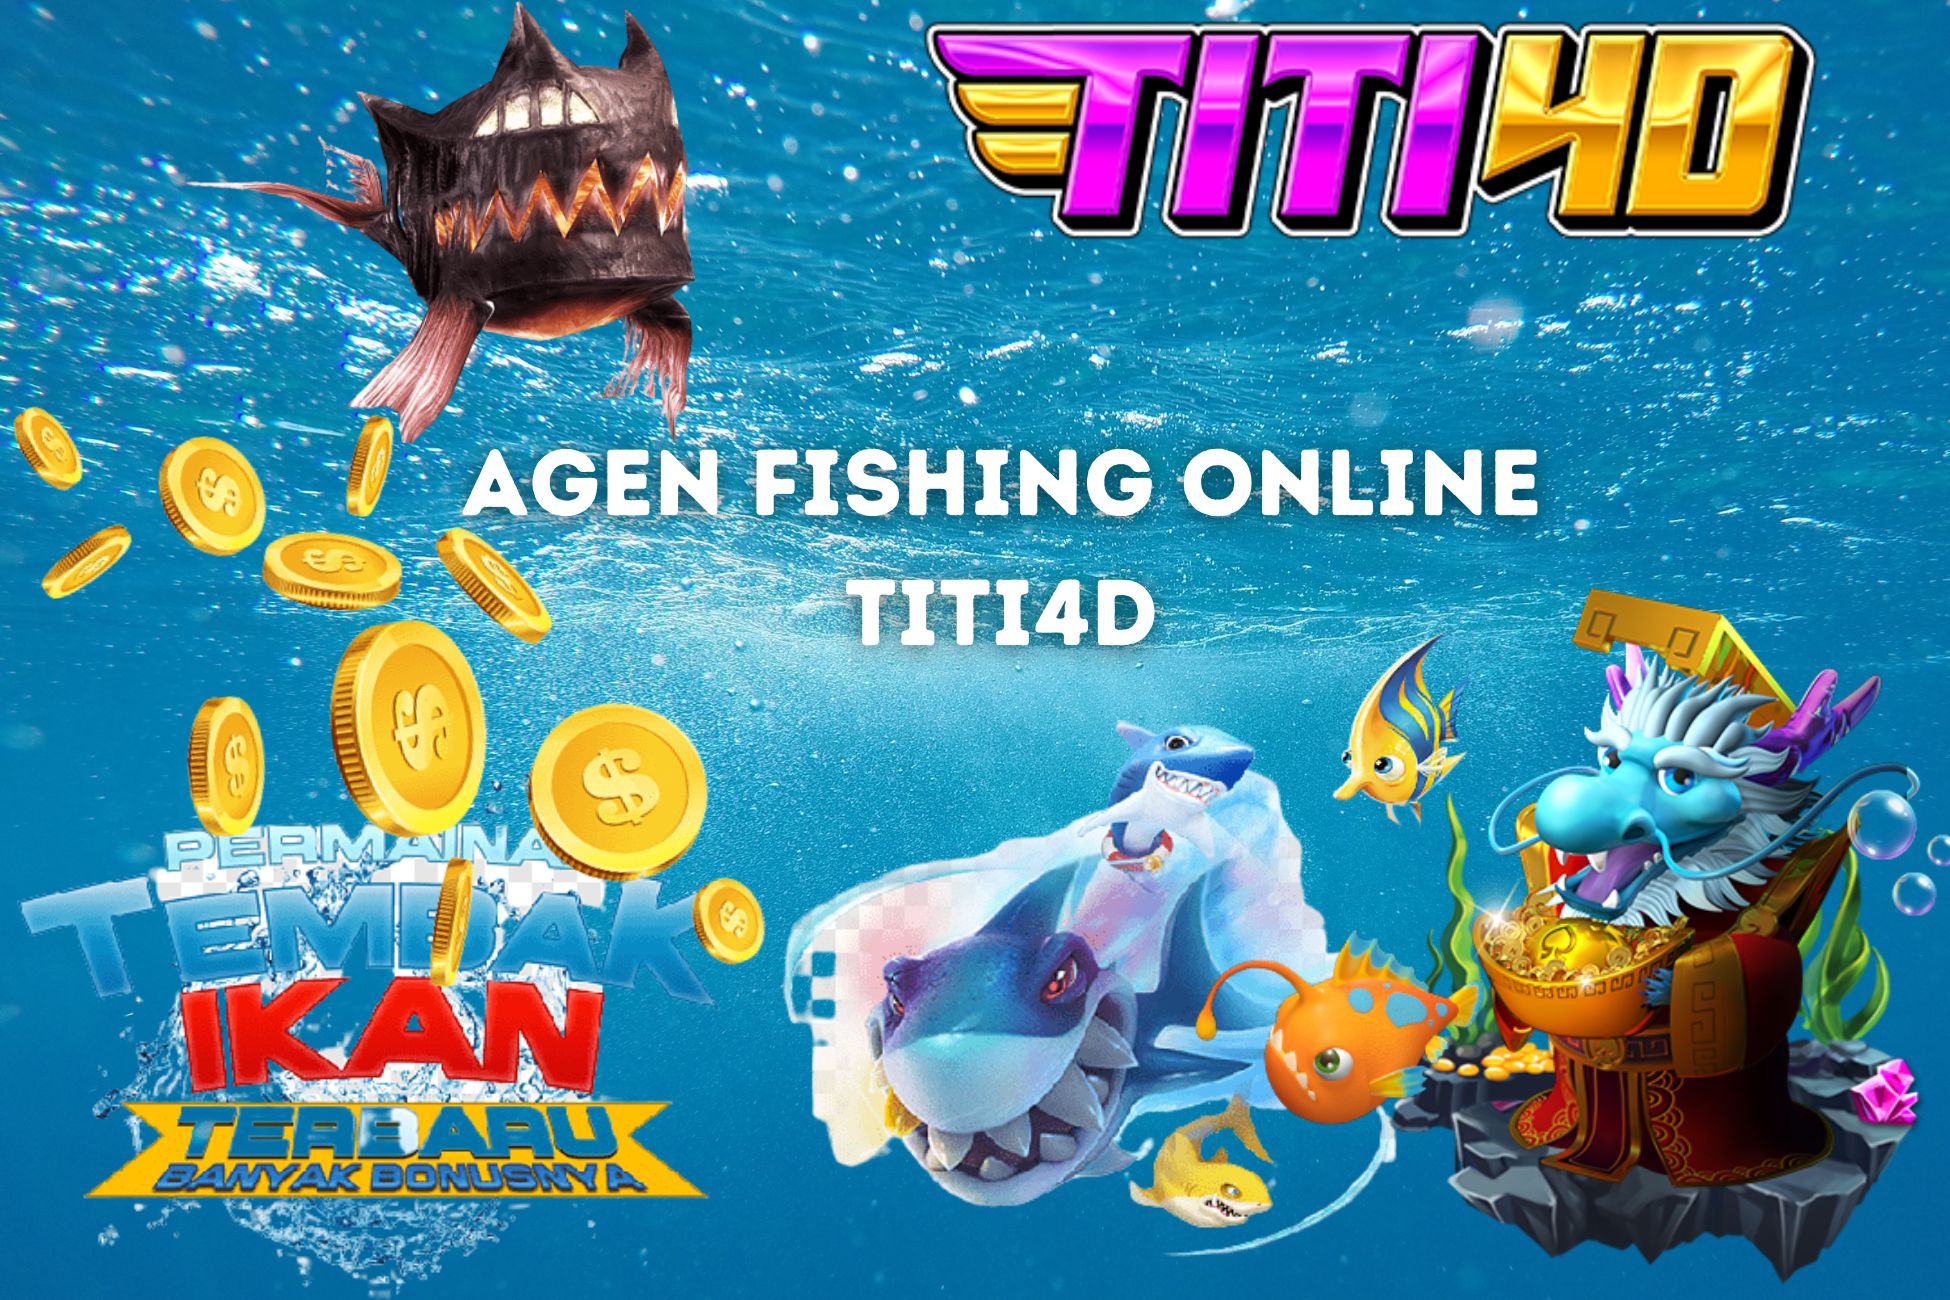 Agen Fishing Online Titi4D